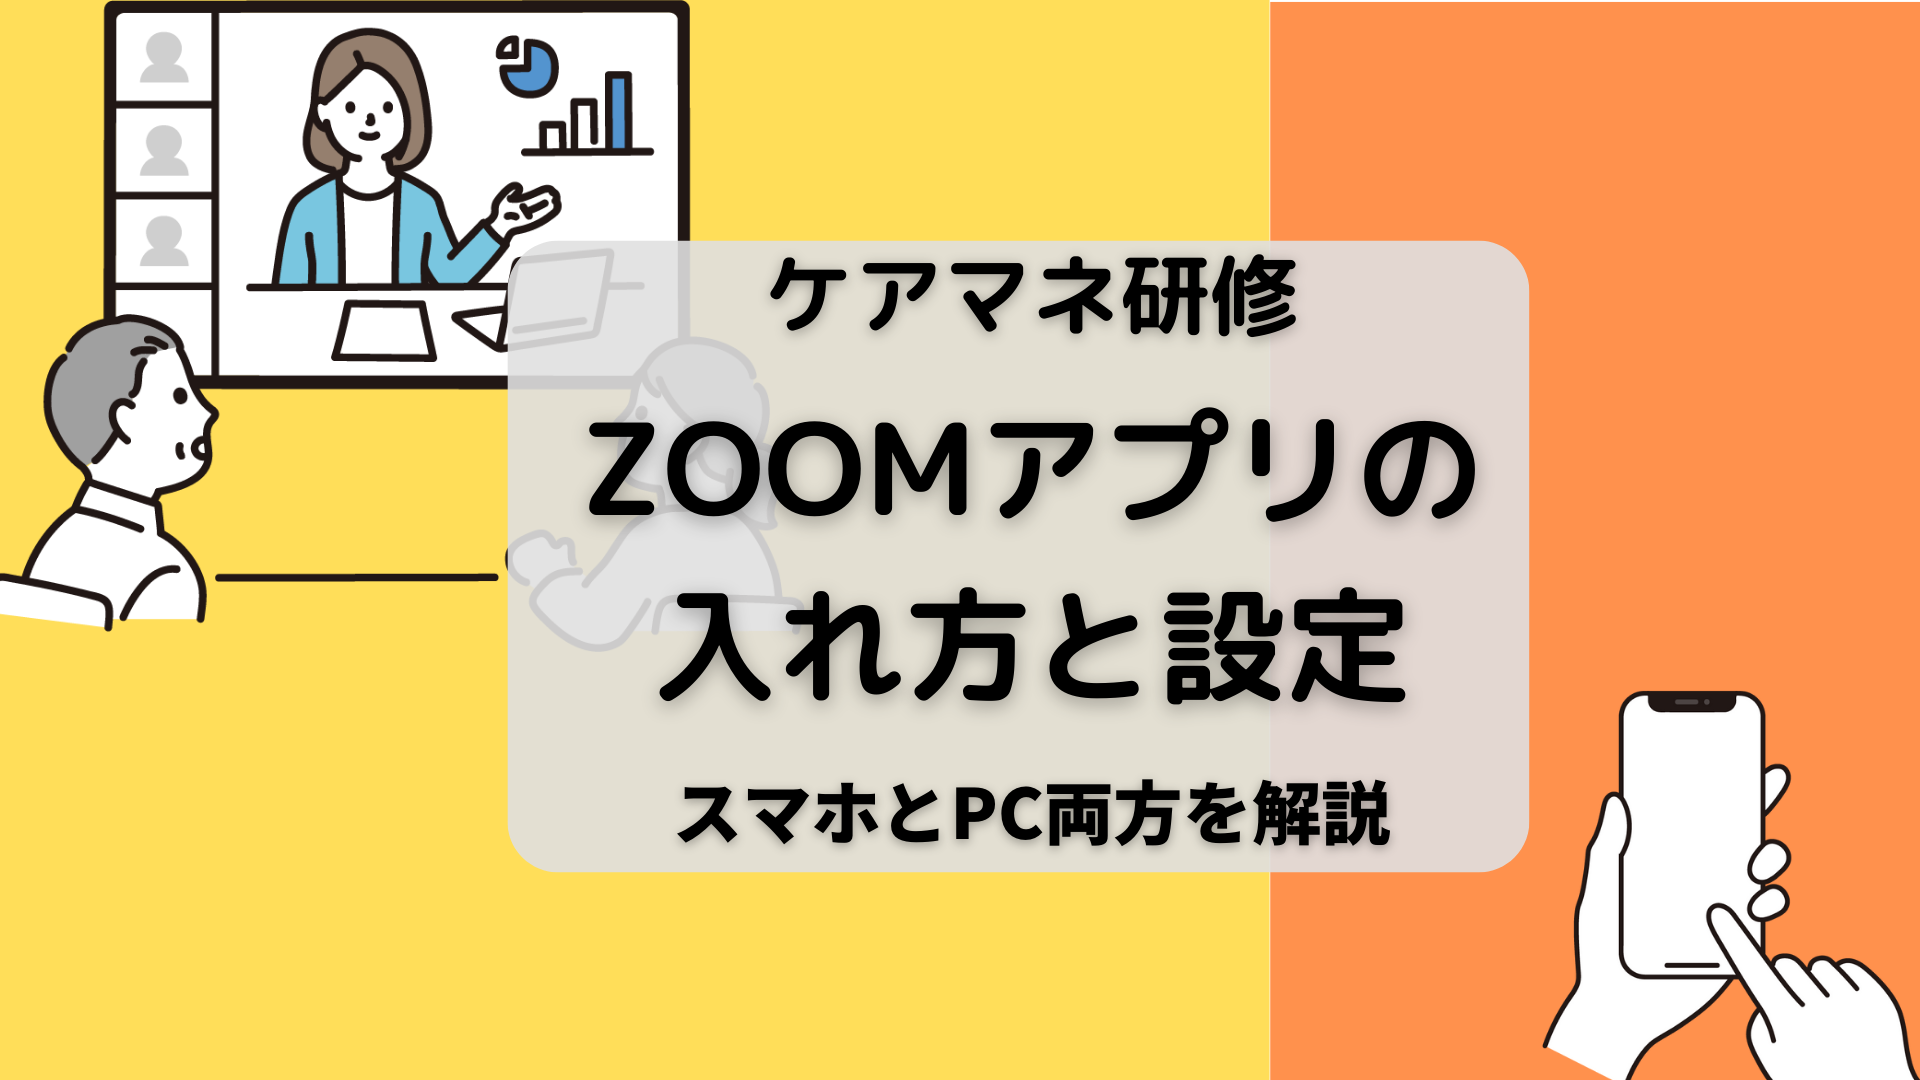 ZOOMアプリの入れ方と設定【PC・スマホ】